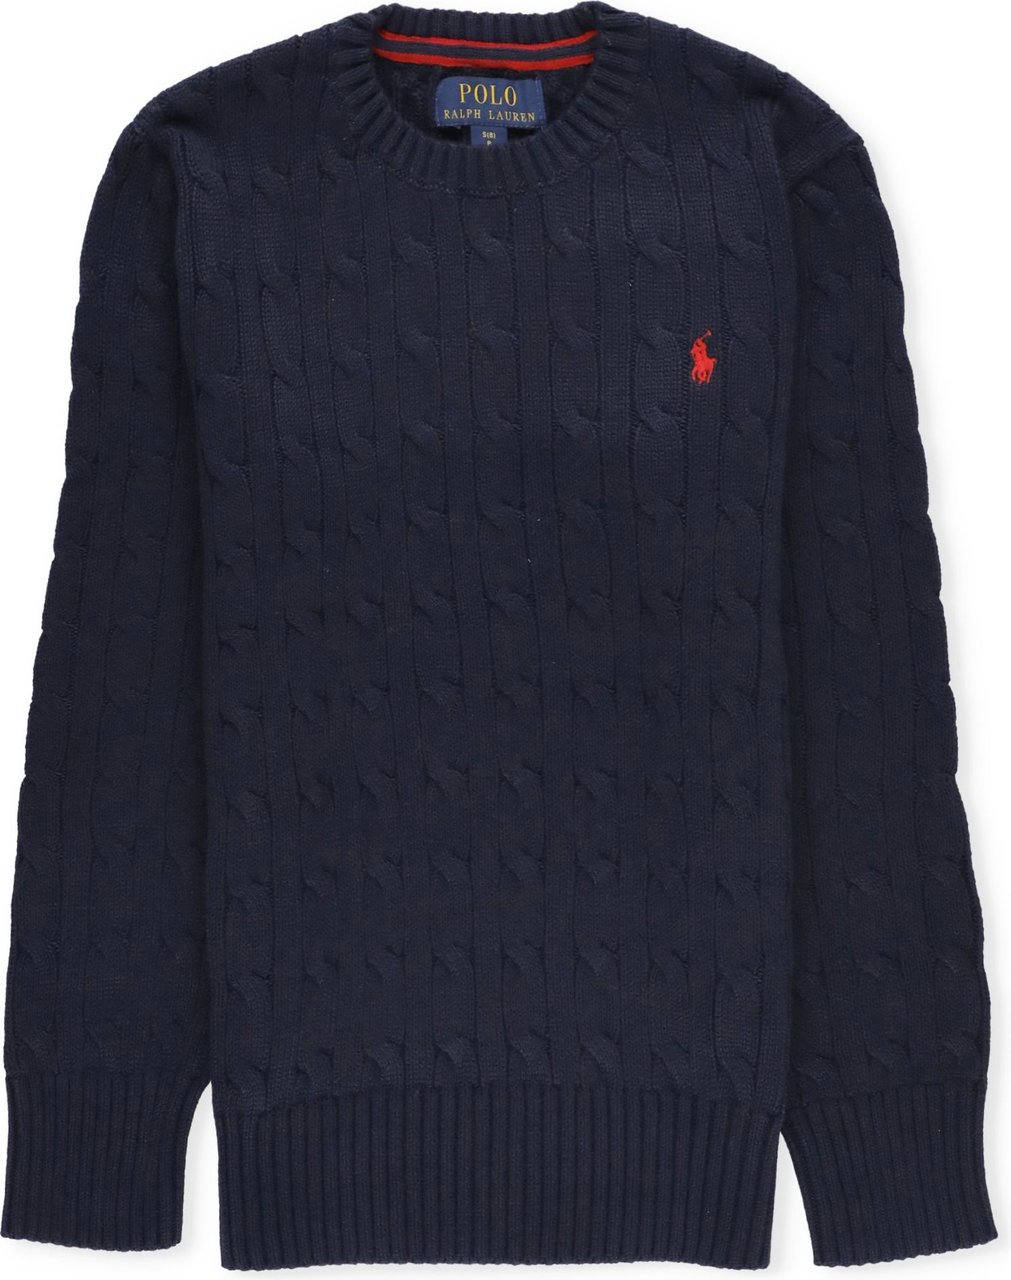 Ralph Lauren ls cable top sweater darkblue (navy) Blauw